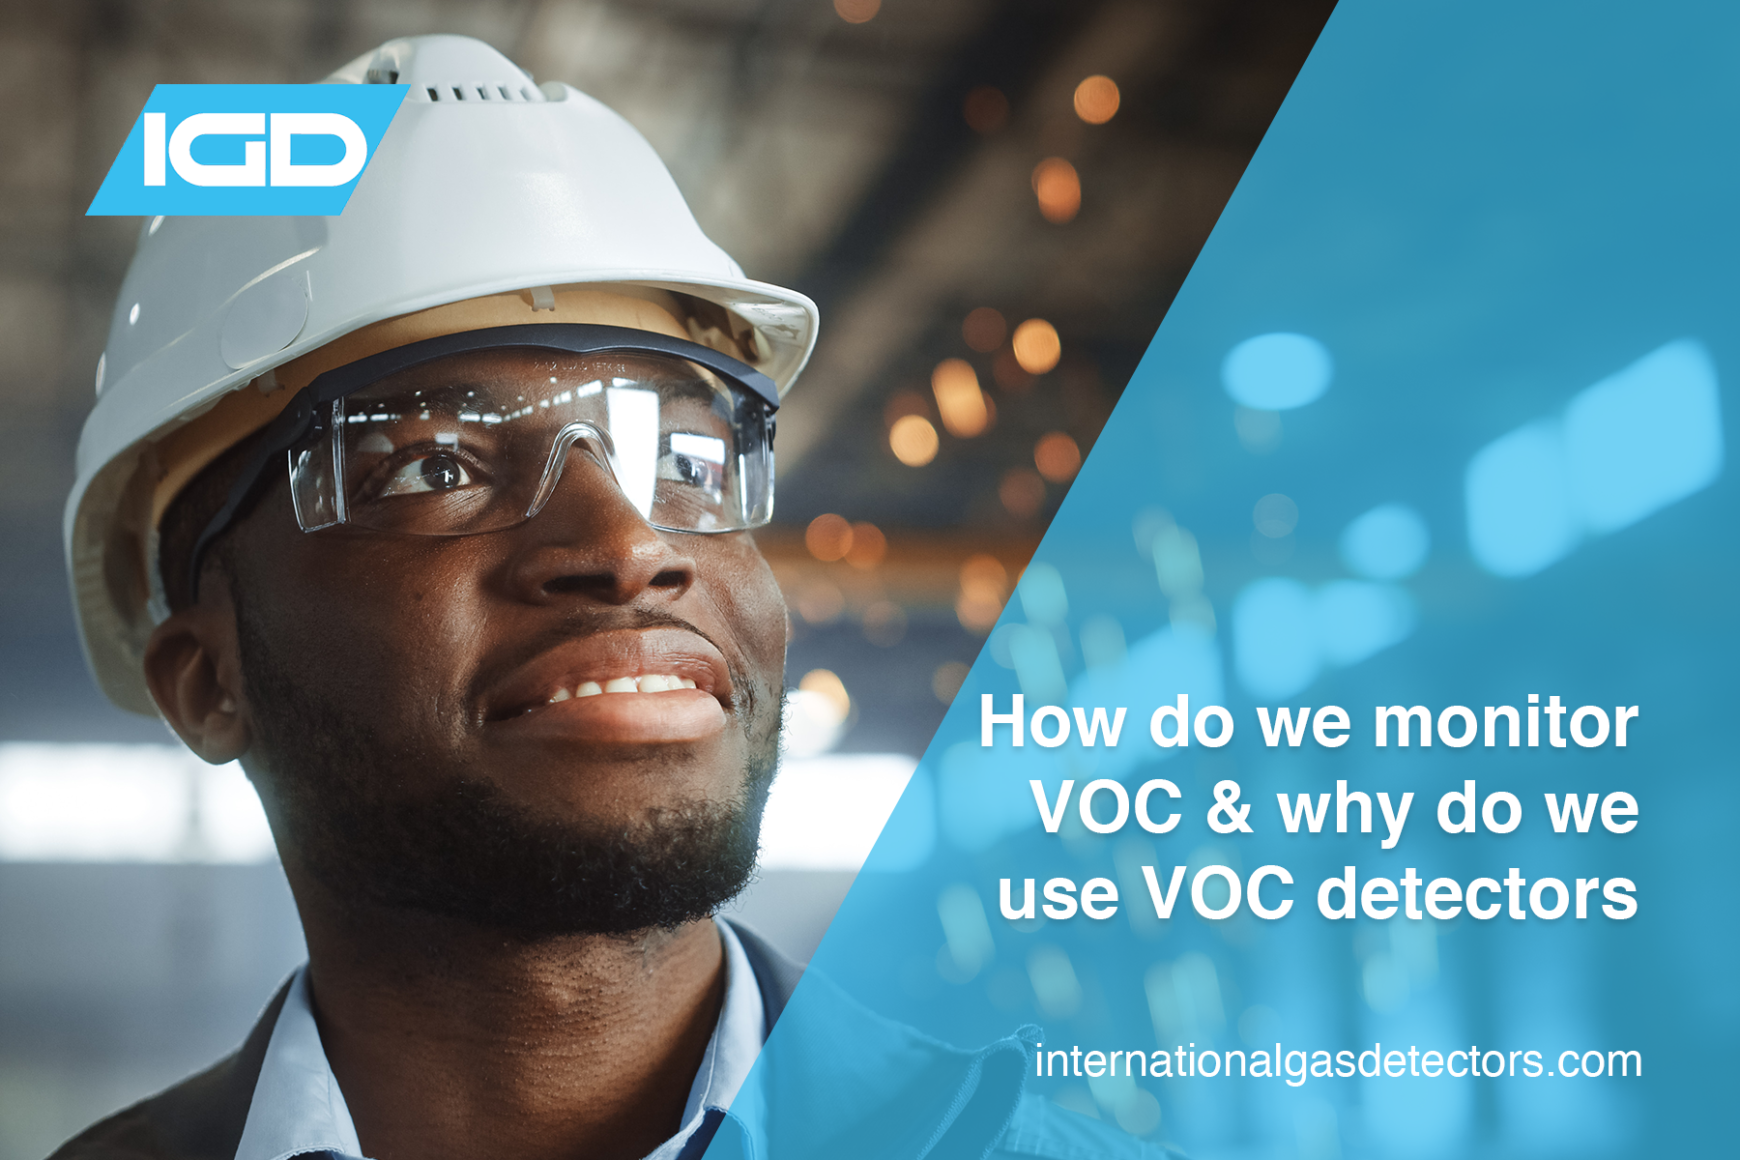 How do we monitor VOCs and why do we use VOC detectors?